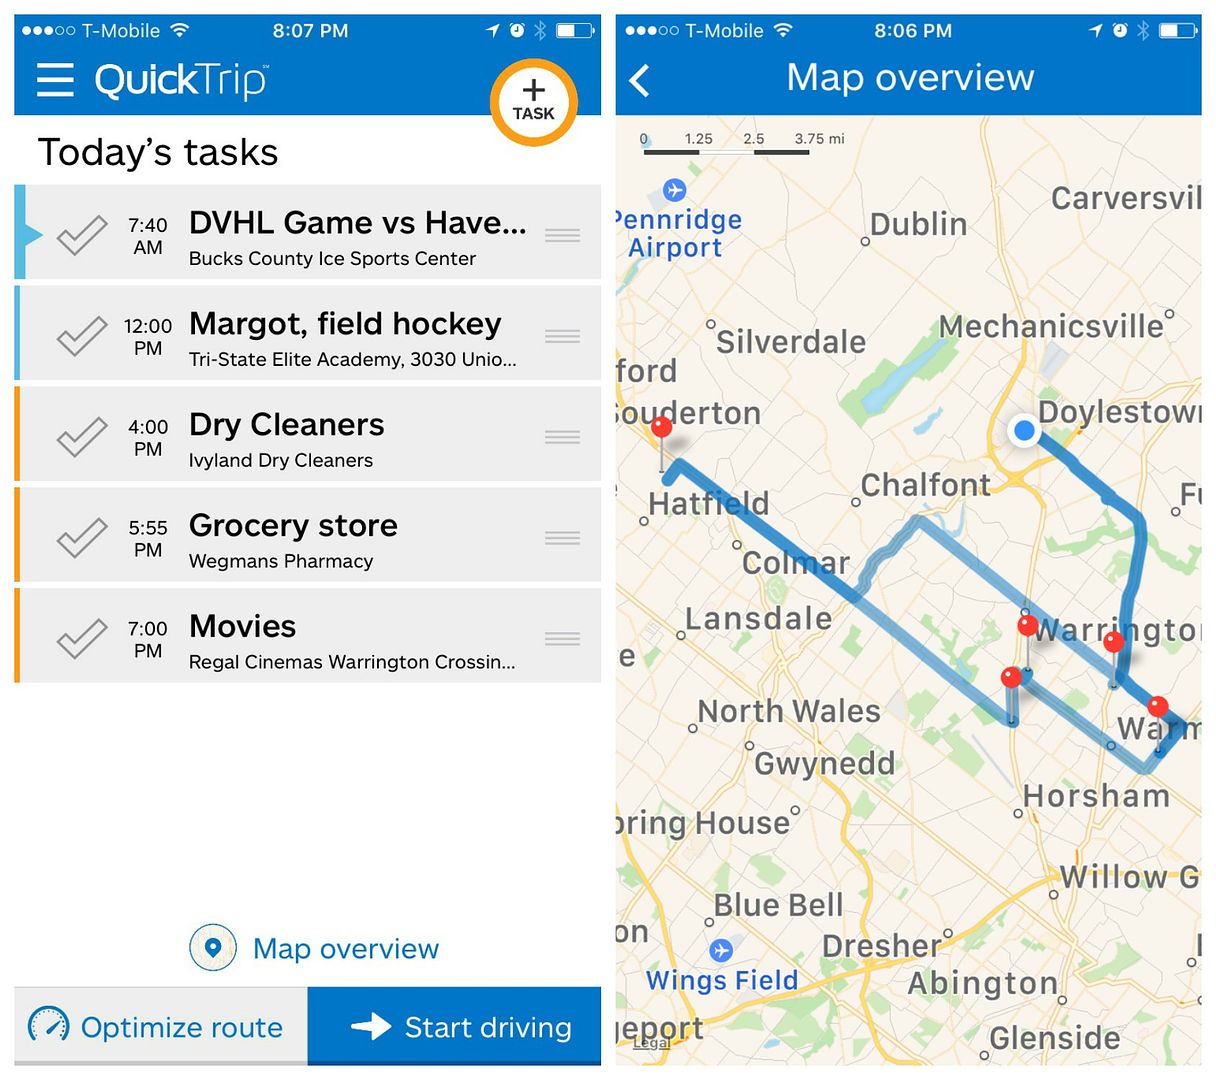 La aplicación QuickTrip optimiza tu lista de tareas pendientes y te ofrece las rutas más inteligentes para ayudarte a ahorrar tiempo